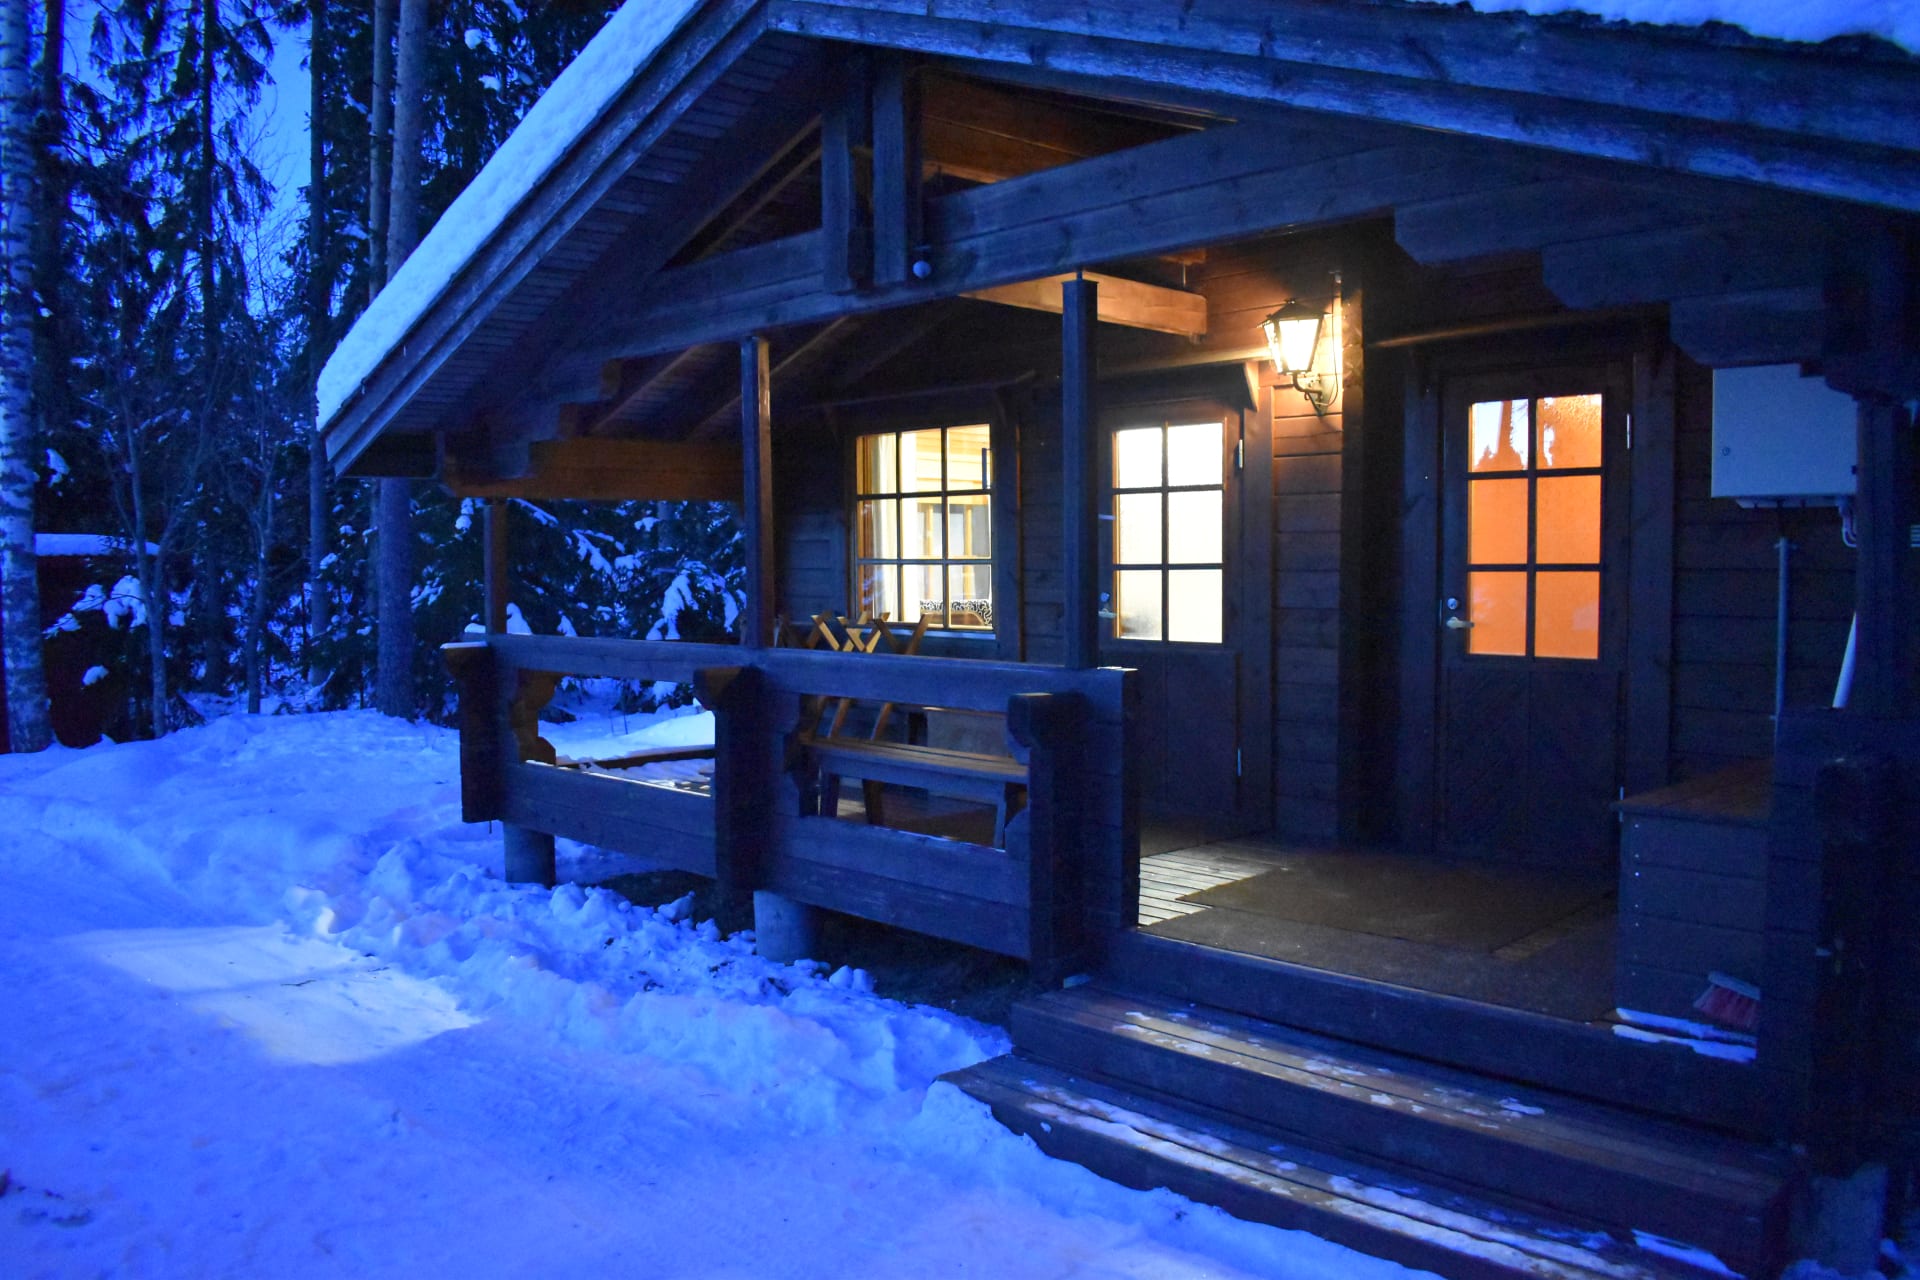 Lehtola cottage in winter.